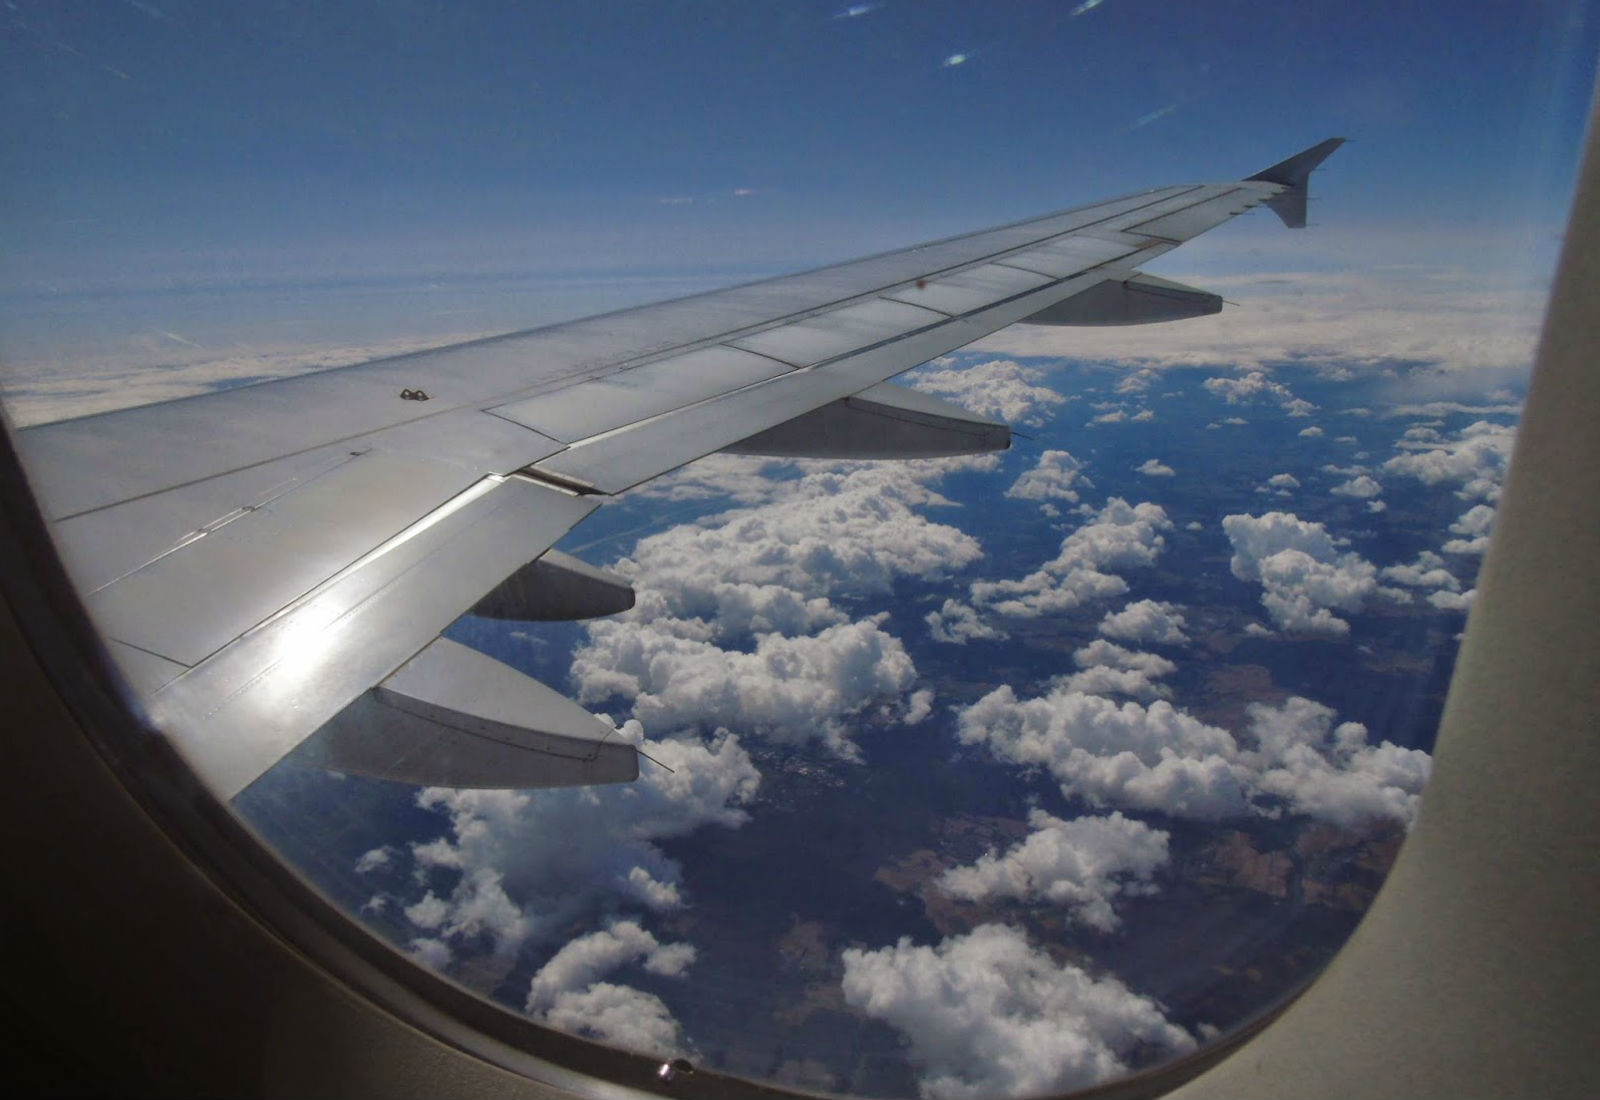 Επιβάτης ανακάλυψε μεγάλη ρωγμή σε παράθυρό αεροπλάνου και κόντεψε να πάθει «καρδιακή προσβολή» (βίντεο)